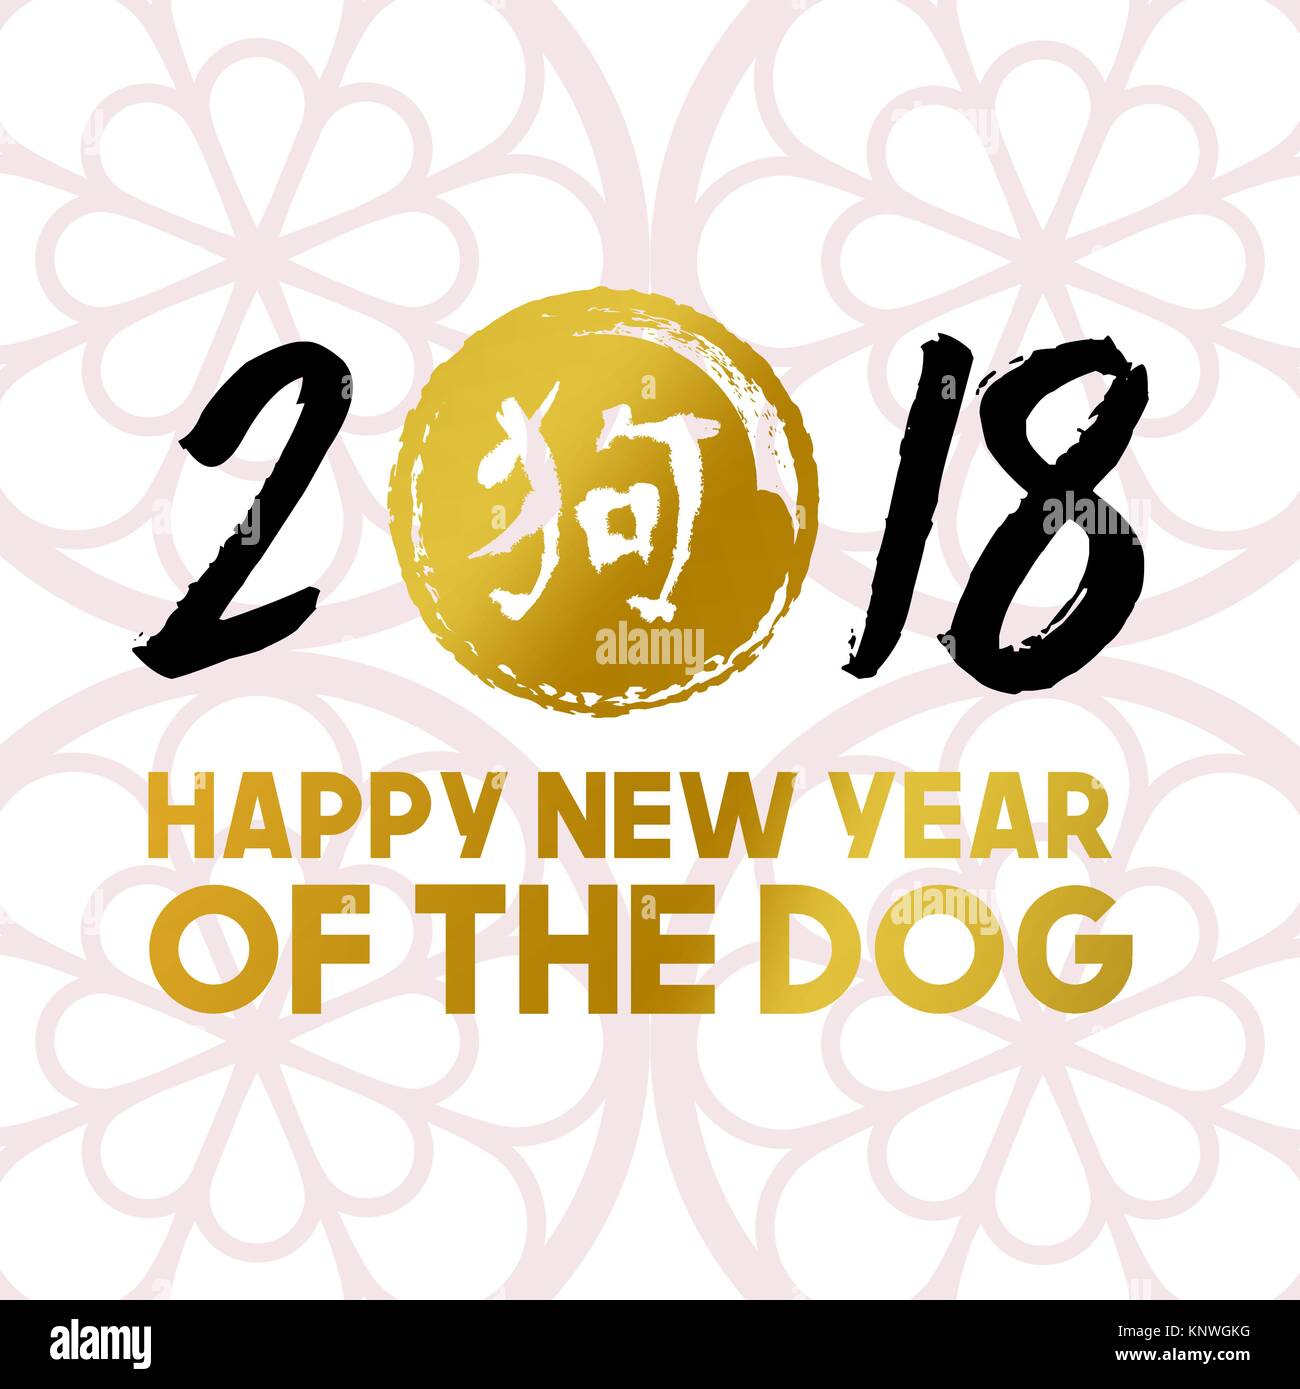 2018 Happy Chinese New Year Gold Grußkarte mit Hand gezeichnet dekorative Dekoration und golden traditionellen Kalligraphie, dass Hund bedeutet. EPS 10 Vektor. Stock Vektor